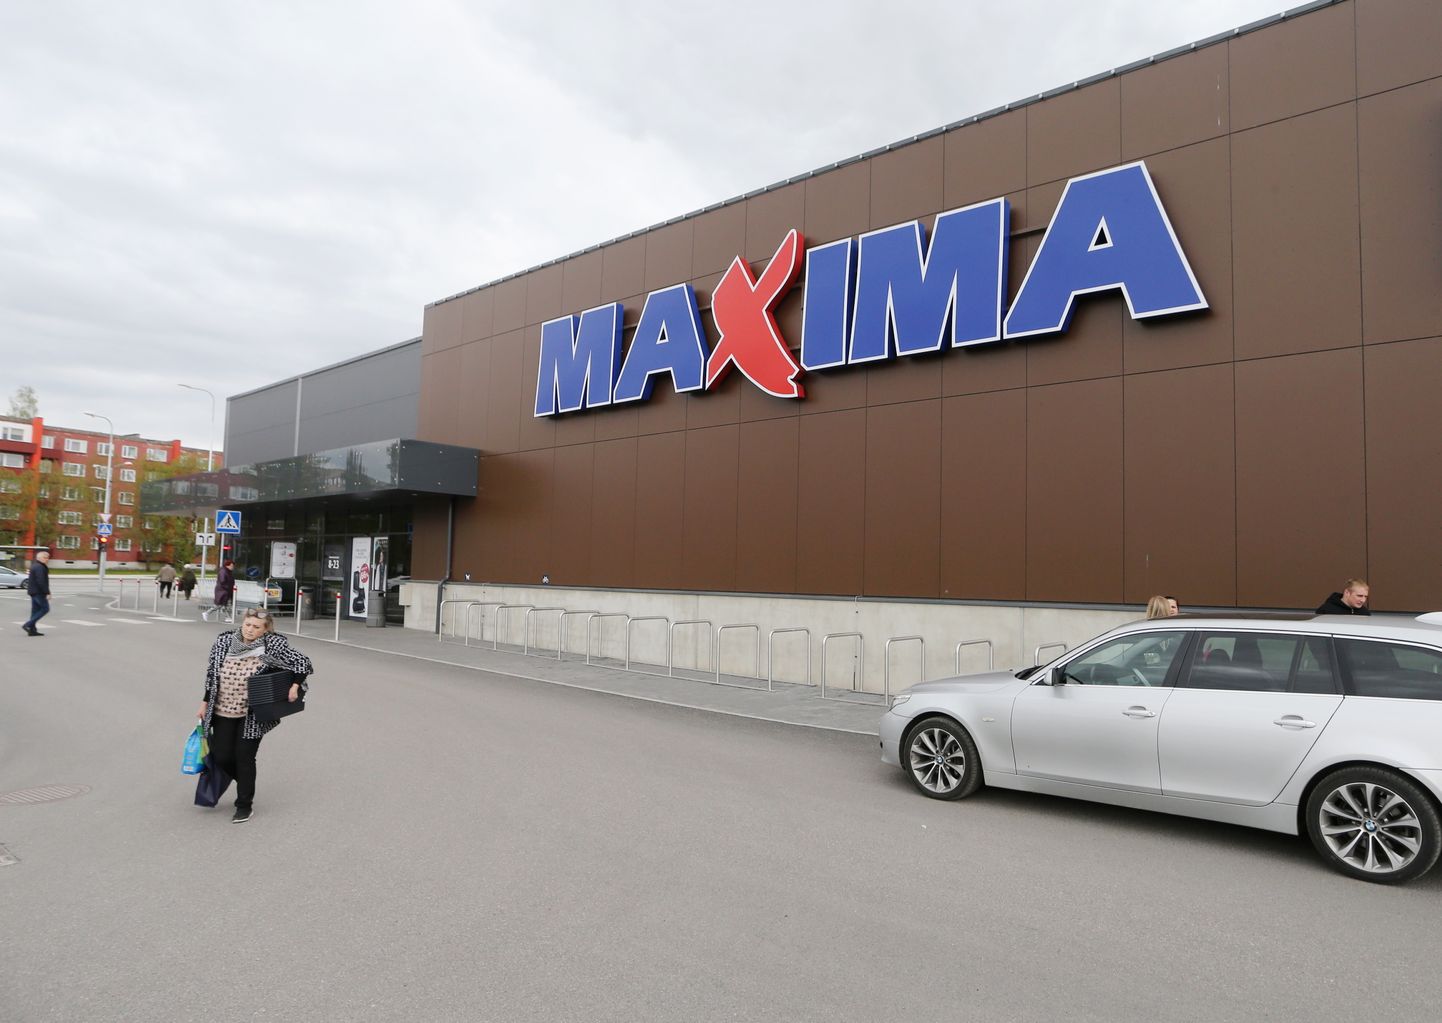 Магазин Maxima, расположенный на Калда-теэ.